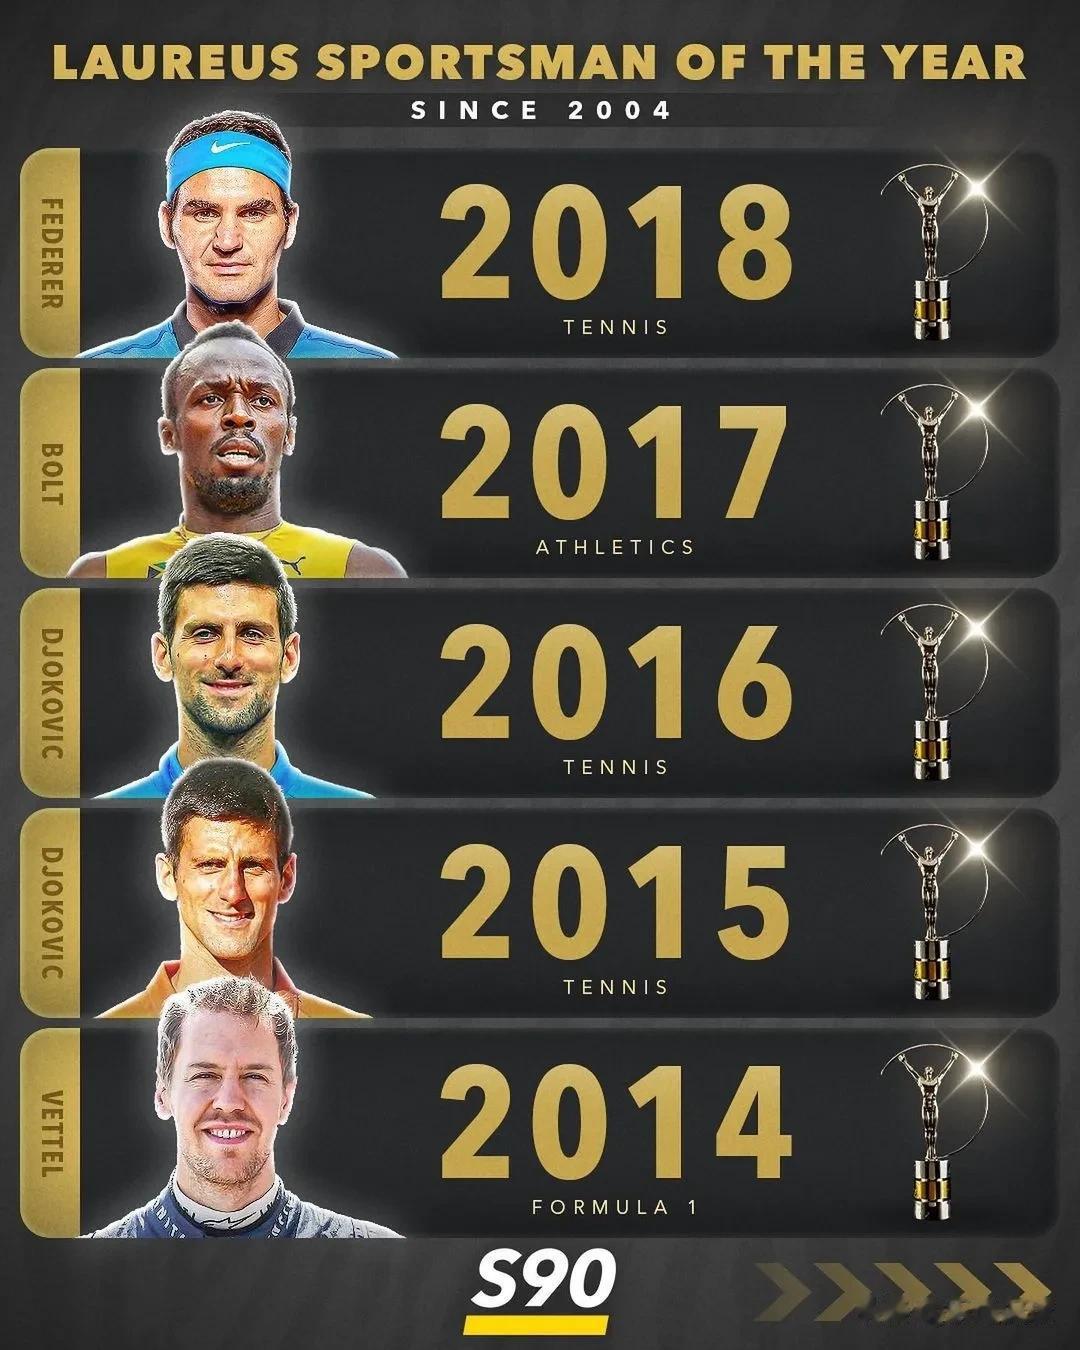 历年劳伦斯最佳运动员奖获奖运动员，足球仅梅西获奖，且是两次获奖。网球界费德勒、纳(2)